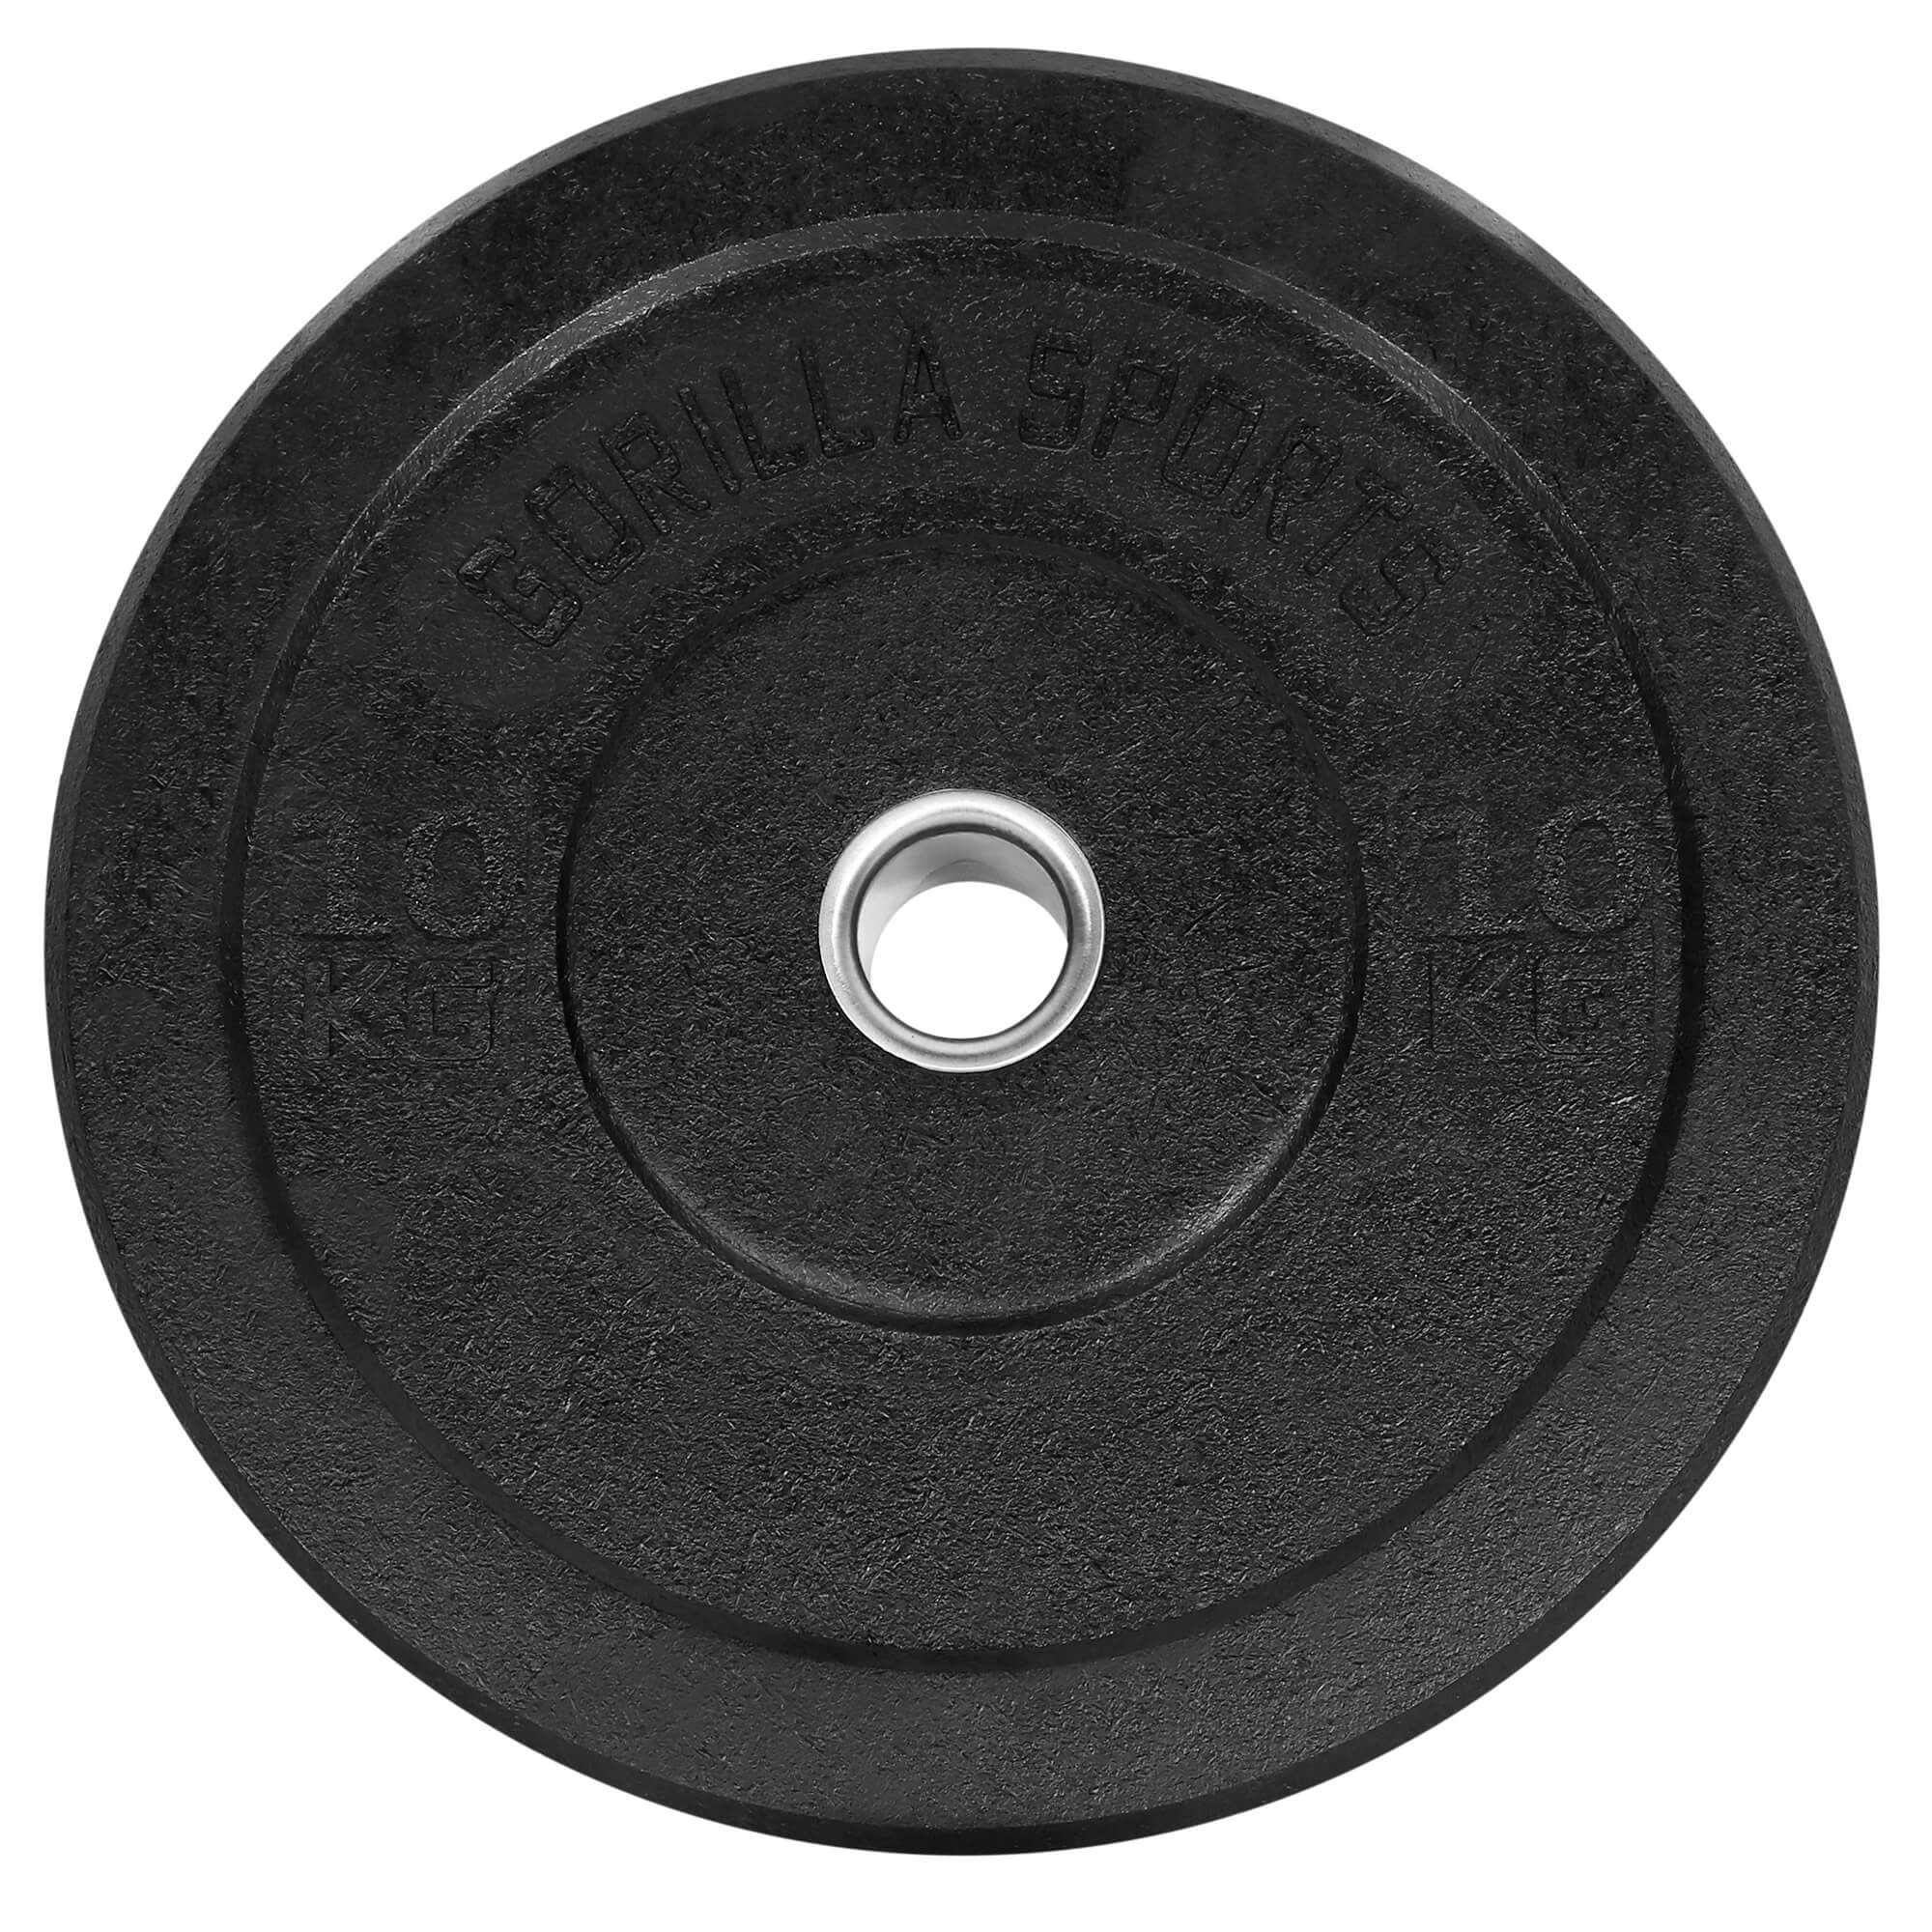 GORILLA SPORTS Hantelscheiben Olympia,5-50kg Gewichte,Einzeln/Set,Bumper Plates,Gewichtsscheiben 10kg